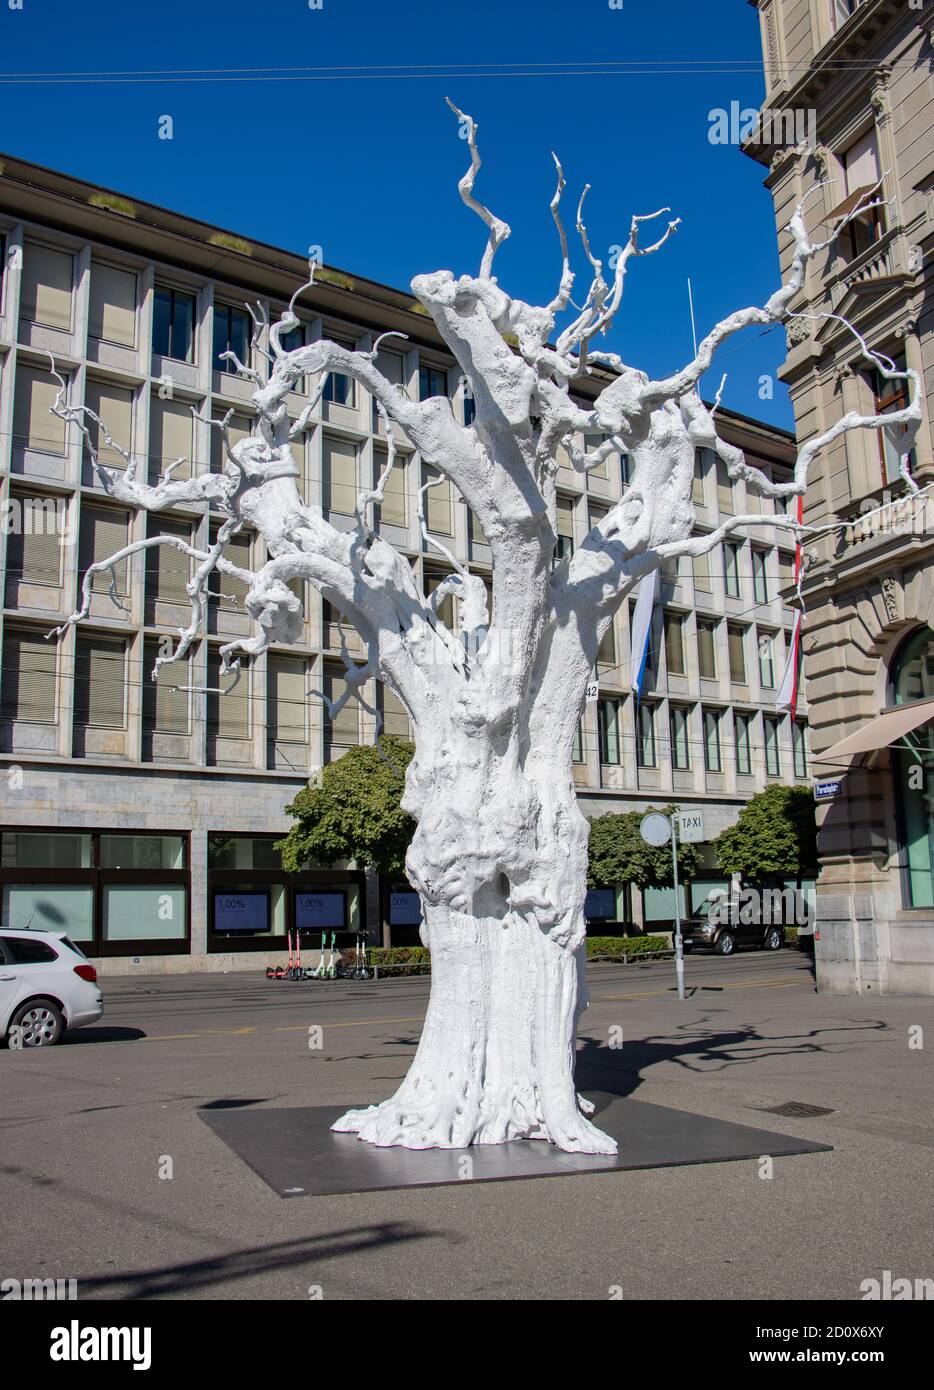 ZURICH, SWITZERLAND, JUL 30 2020, An artistic imitation of a white olive tree on Paradeplatz square, Zurich. Stock Photo